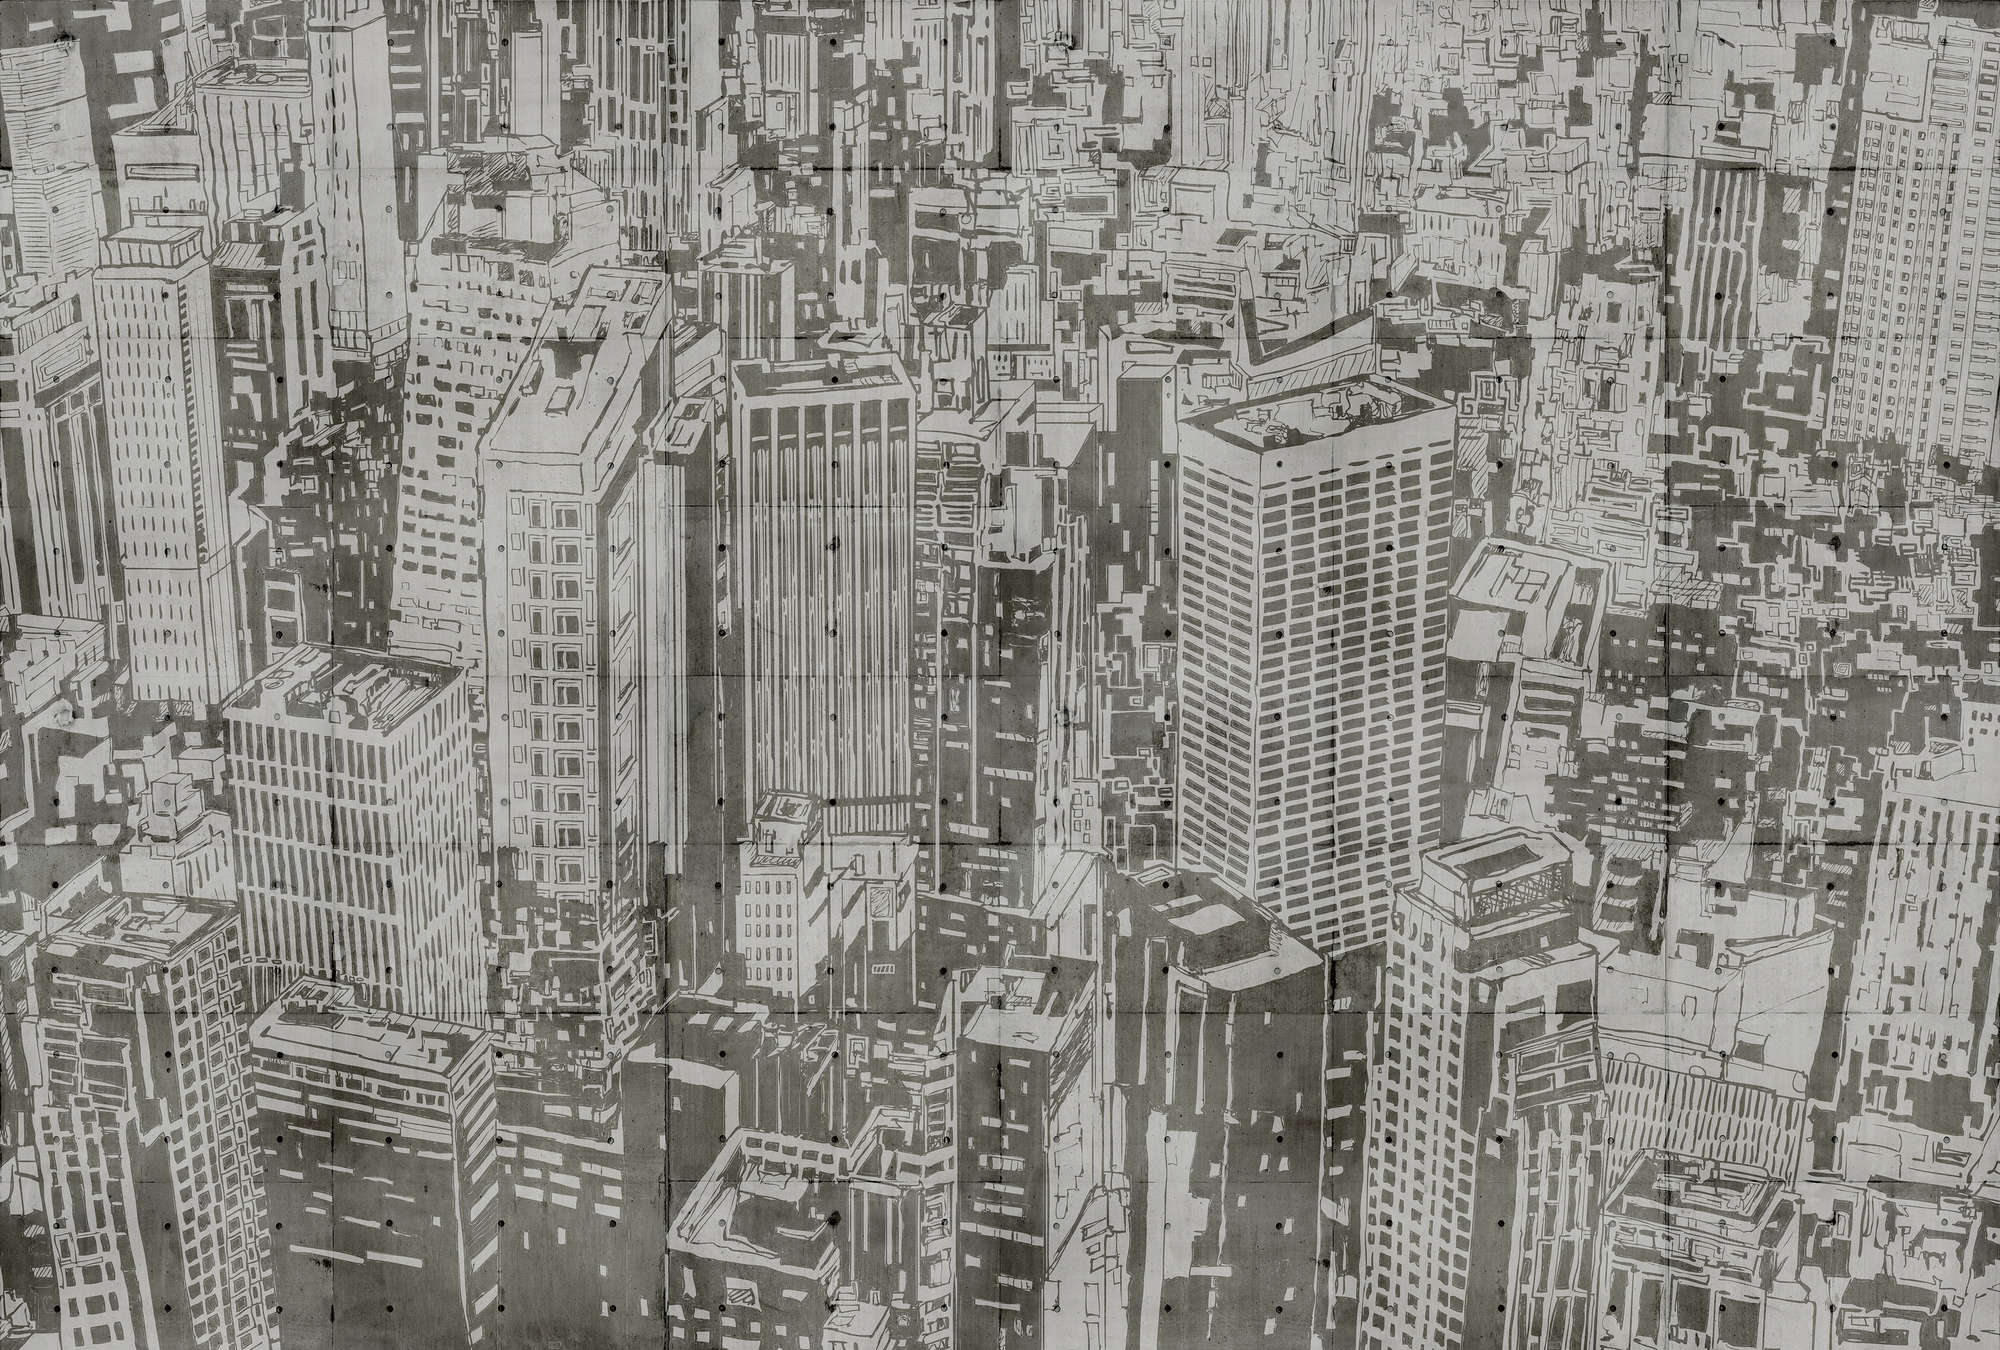             Downtown 2 - Fototapete in Beton Struktur im New York Look – Beige, Braun | Mattes Glattvlies
        